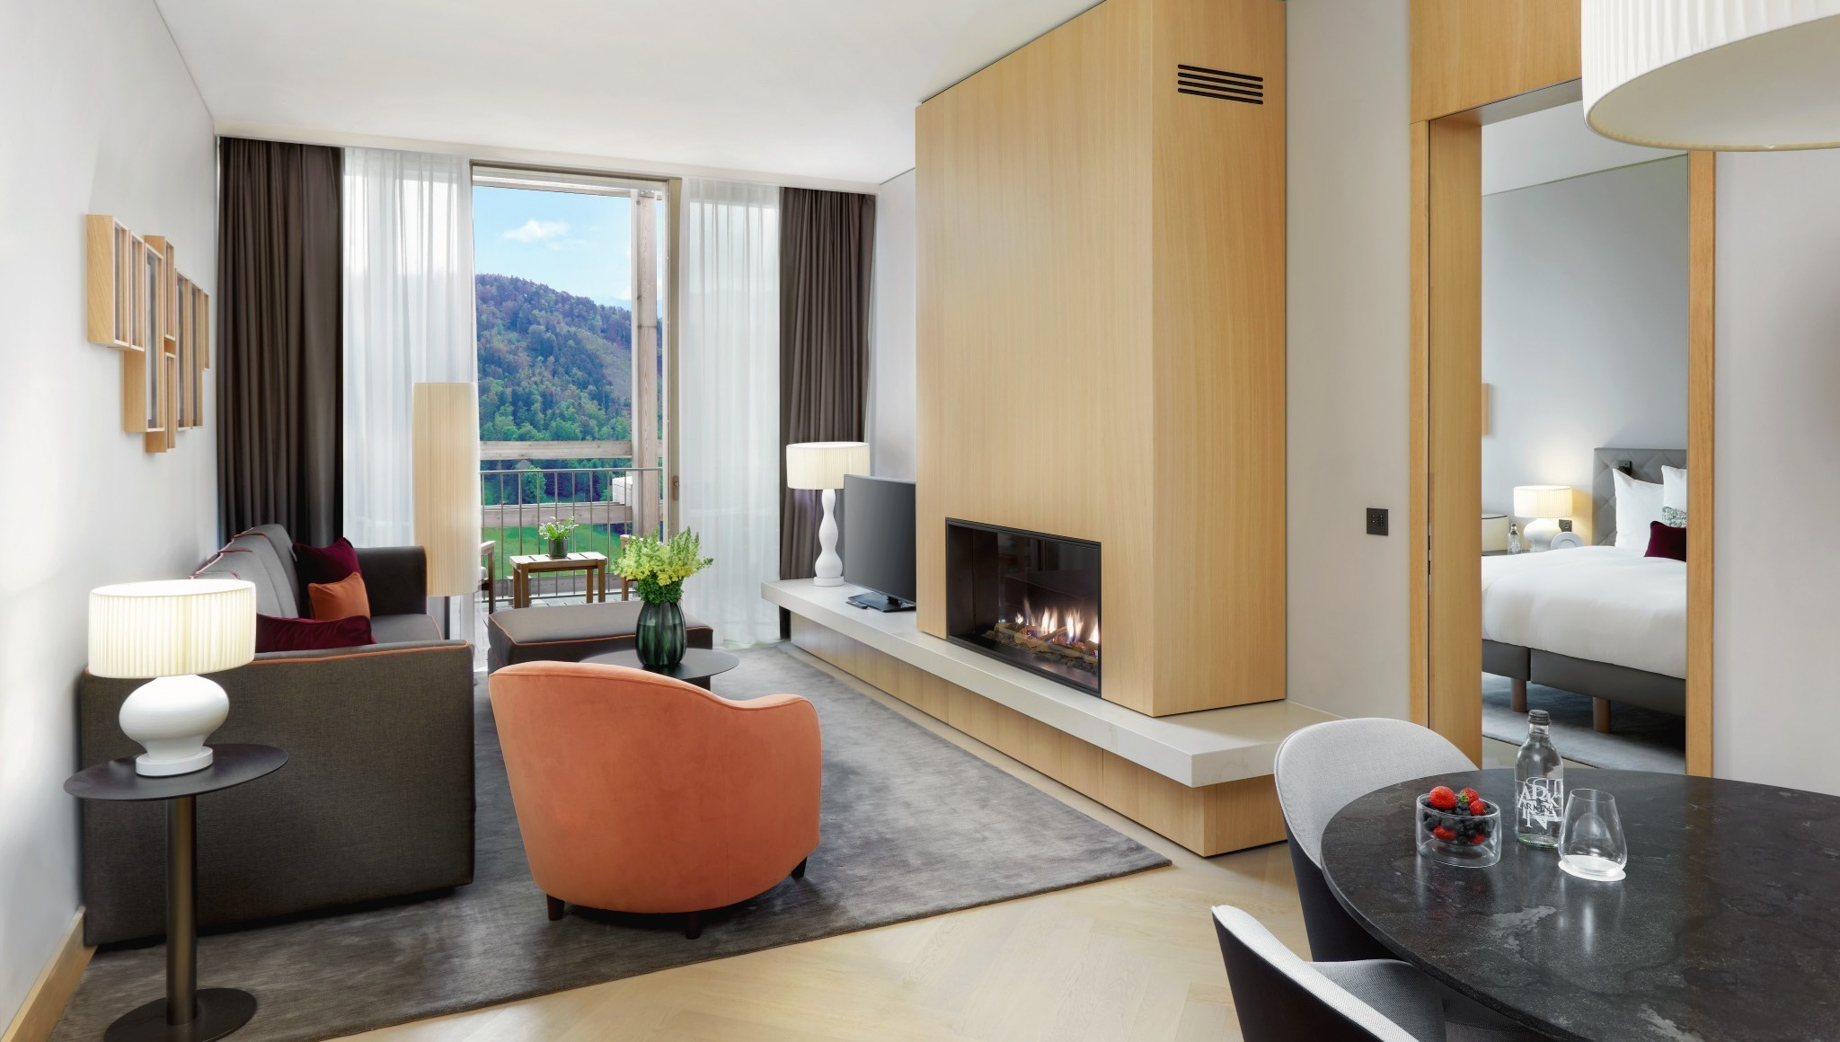 Waldhotel – Burgenstock Hotels & Resort – Obburgen, Switzerland – Alpine Suite Living Room